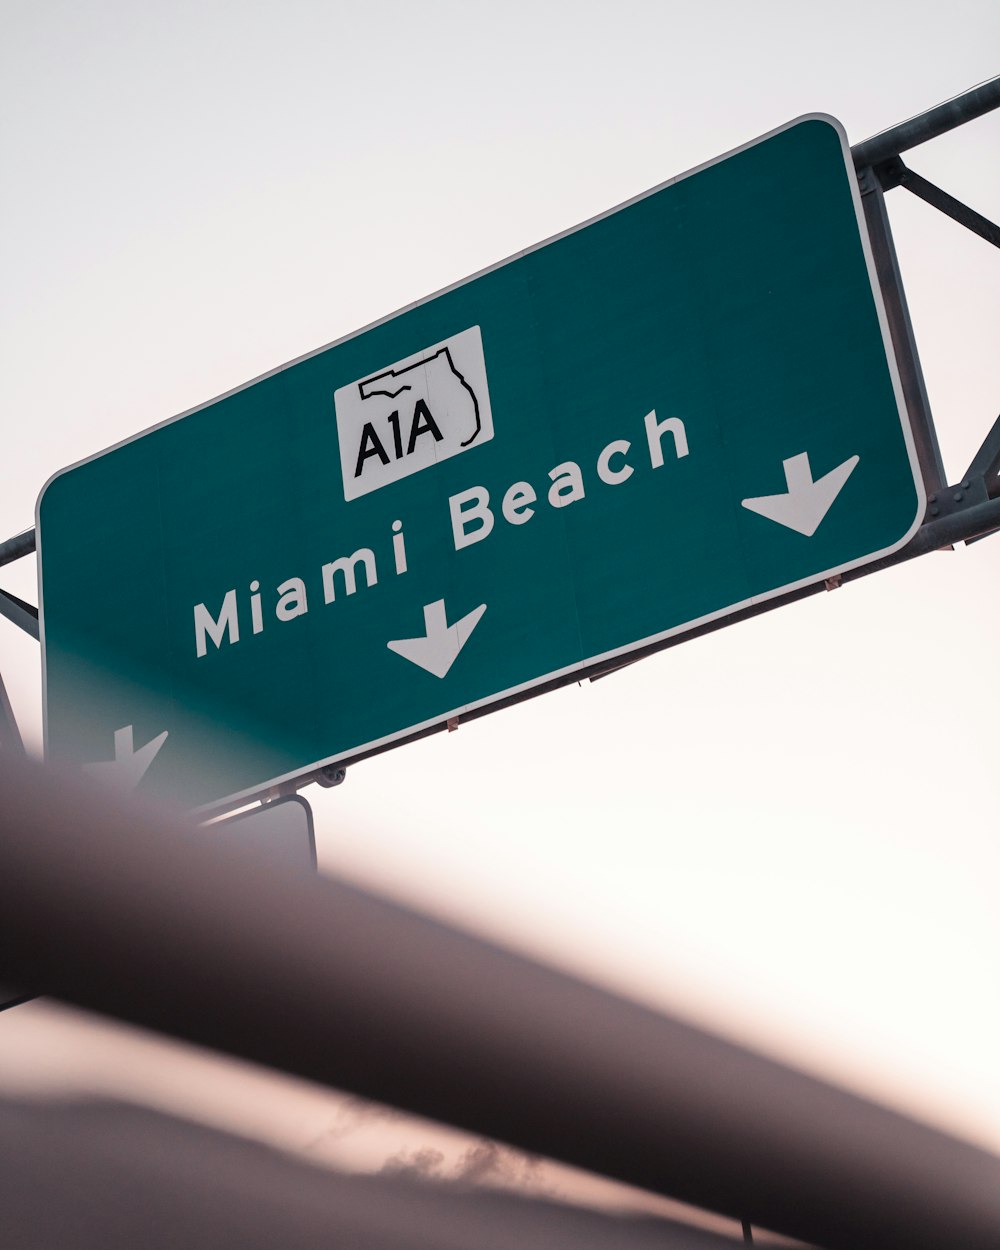 Panneau A1A Miami Beach